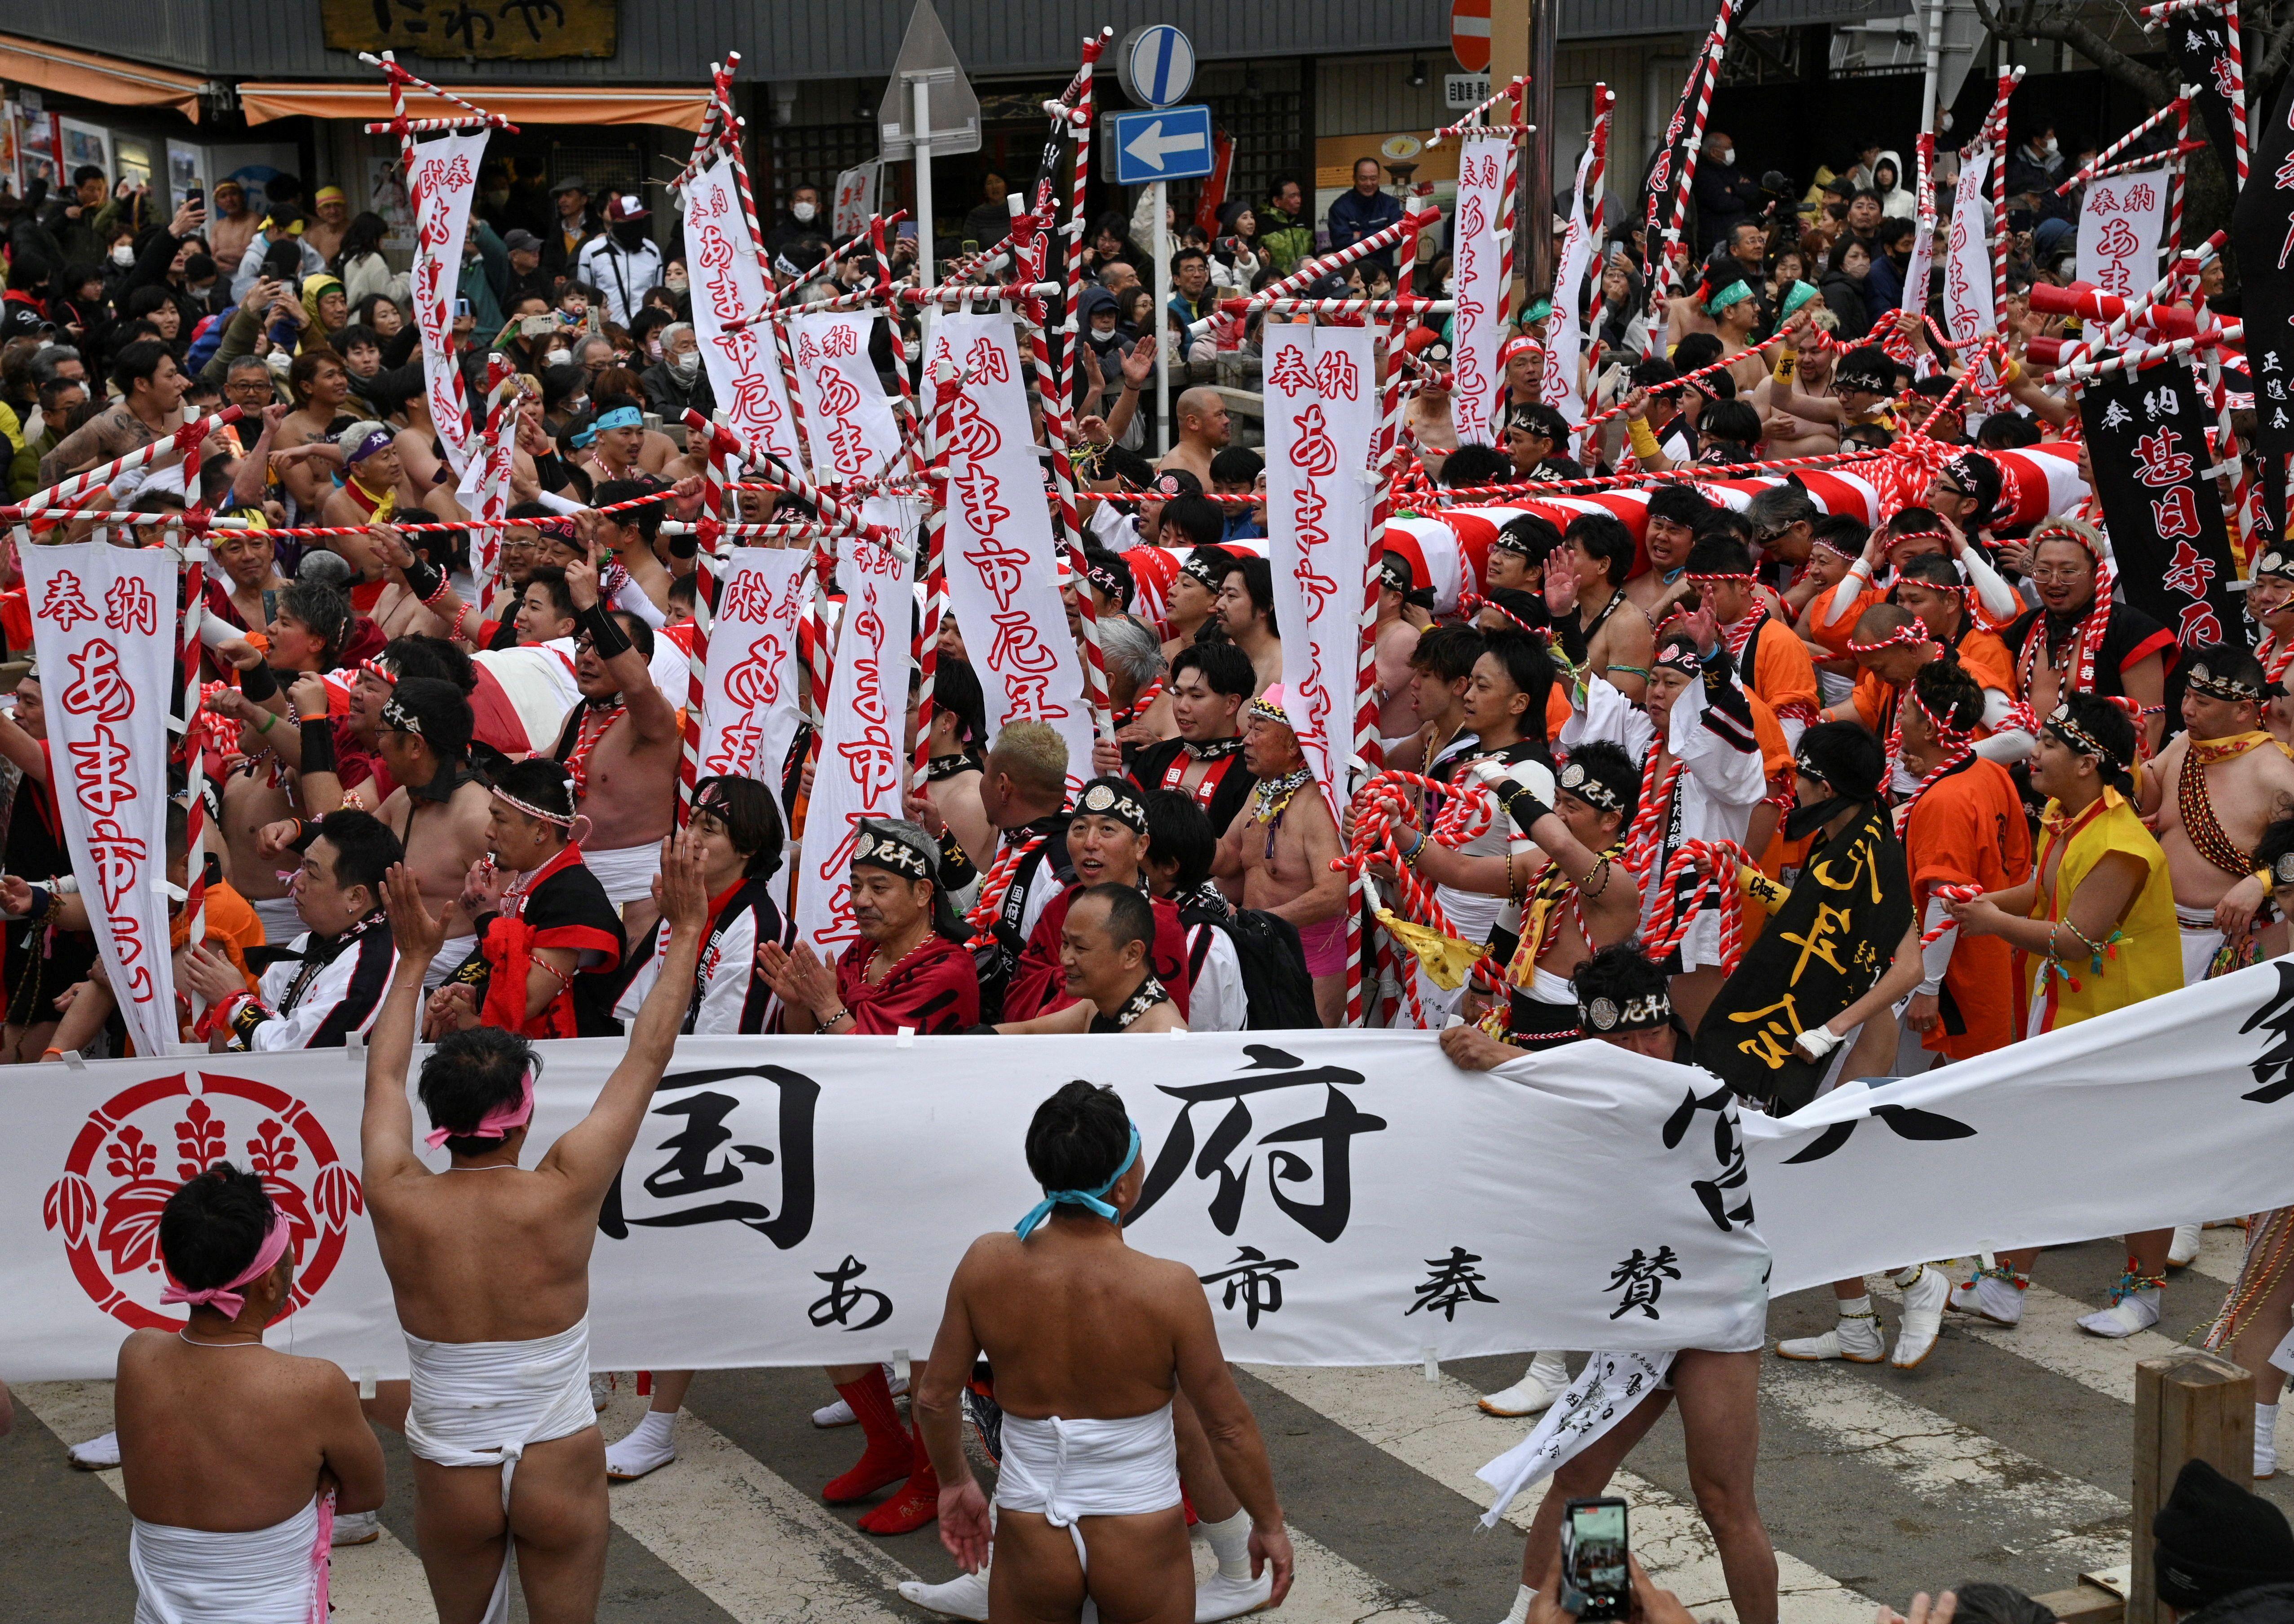 Hombres en el festival de Hadaka Matsuri.